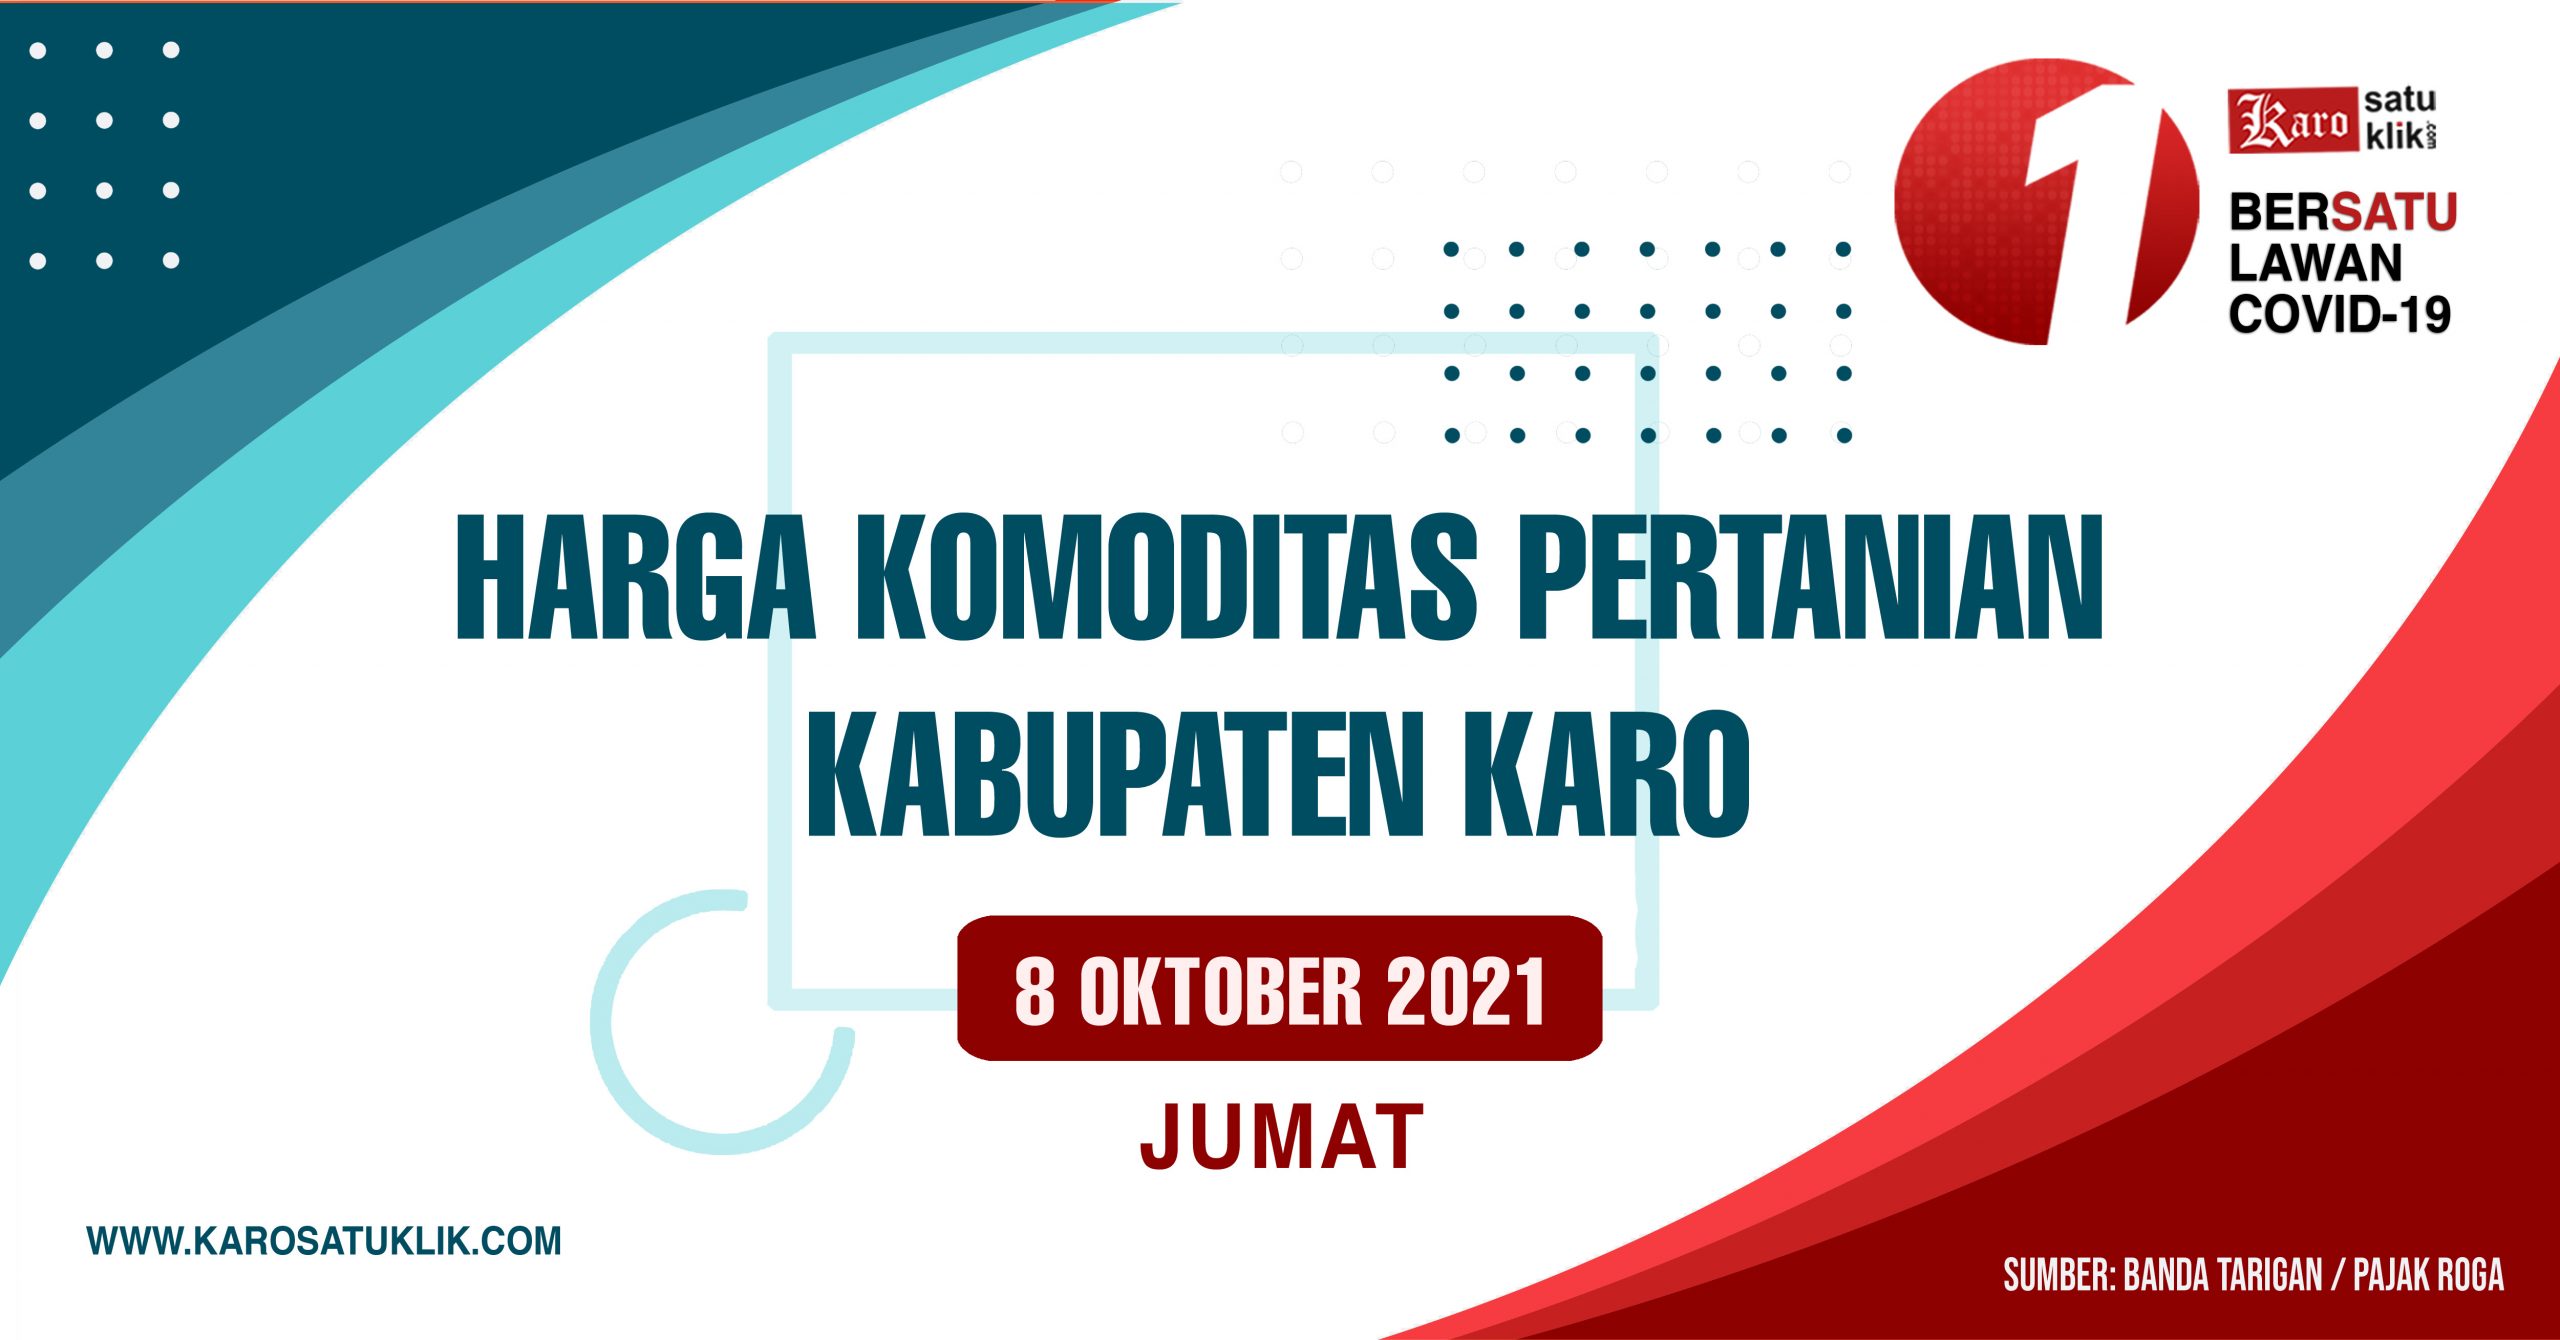 Daftar Harga Komoditas Pertanian Kabupaten Karo, 8 Oktober 2021